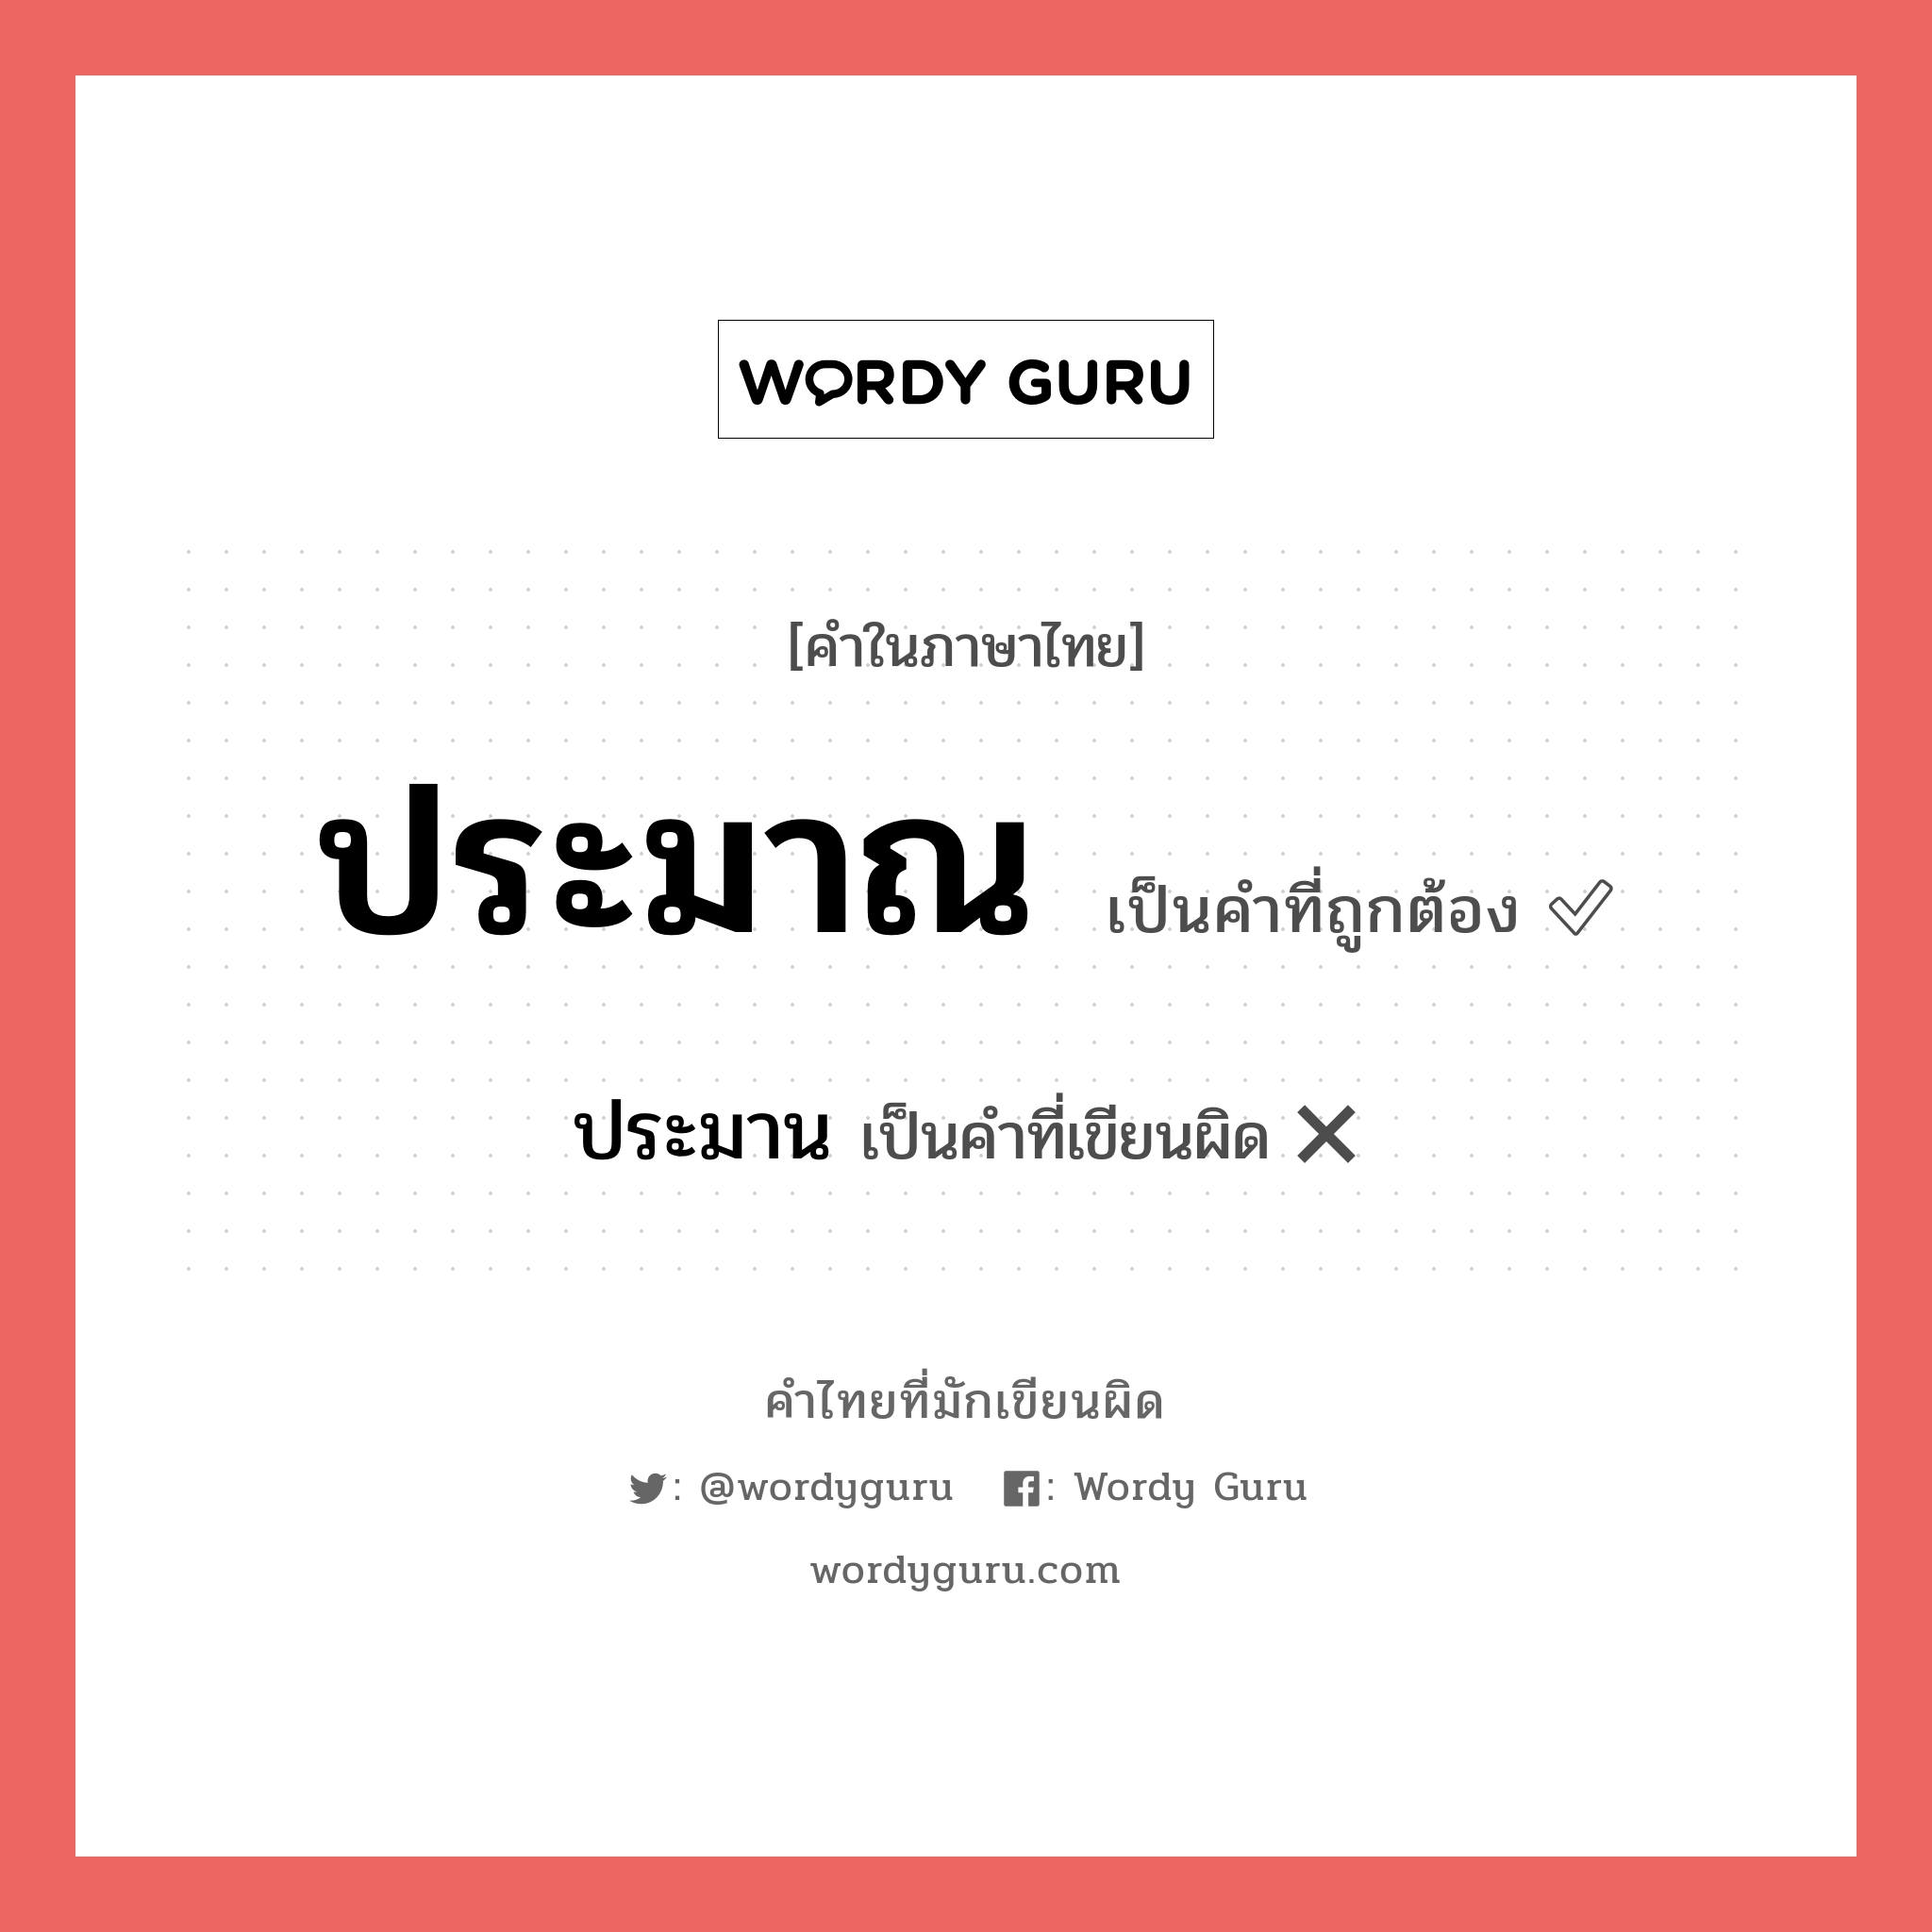 ประมาณ หรือ ประมาน คำไหนเขียนถูก?, คำในภาษาไทยที่มักเขียนผิด ประมาณ คำที่ผิด ❌ ประมาน